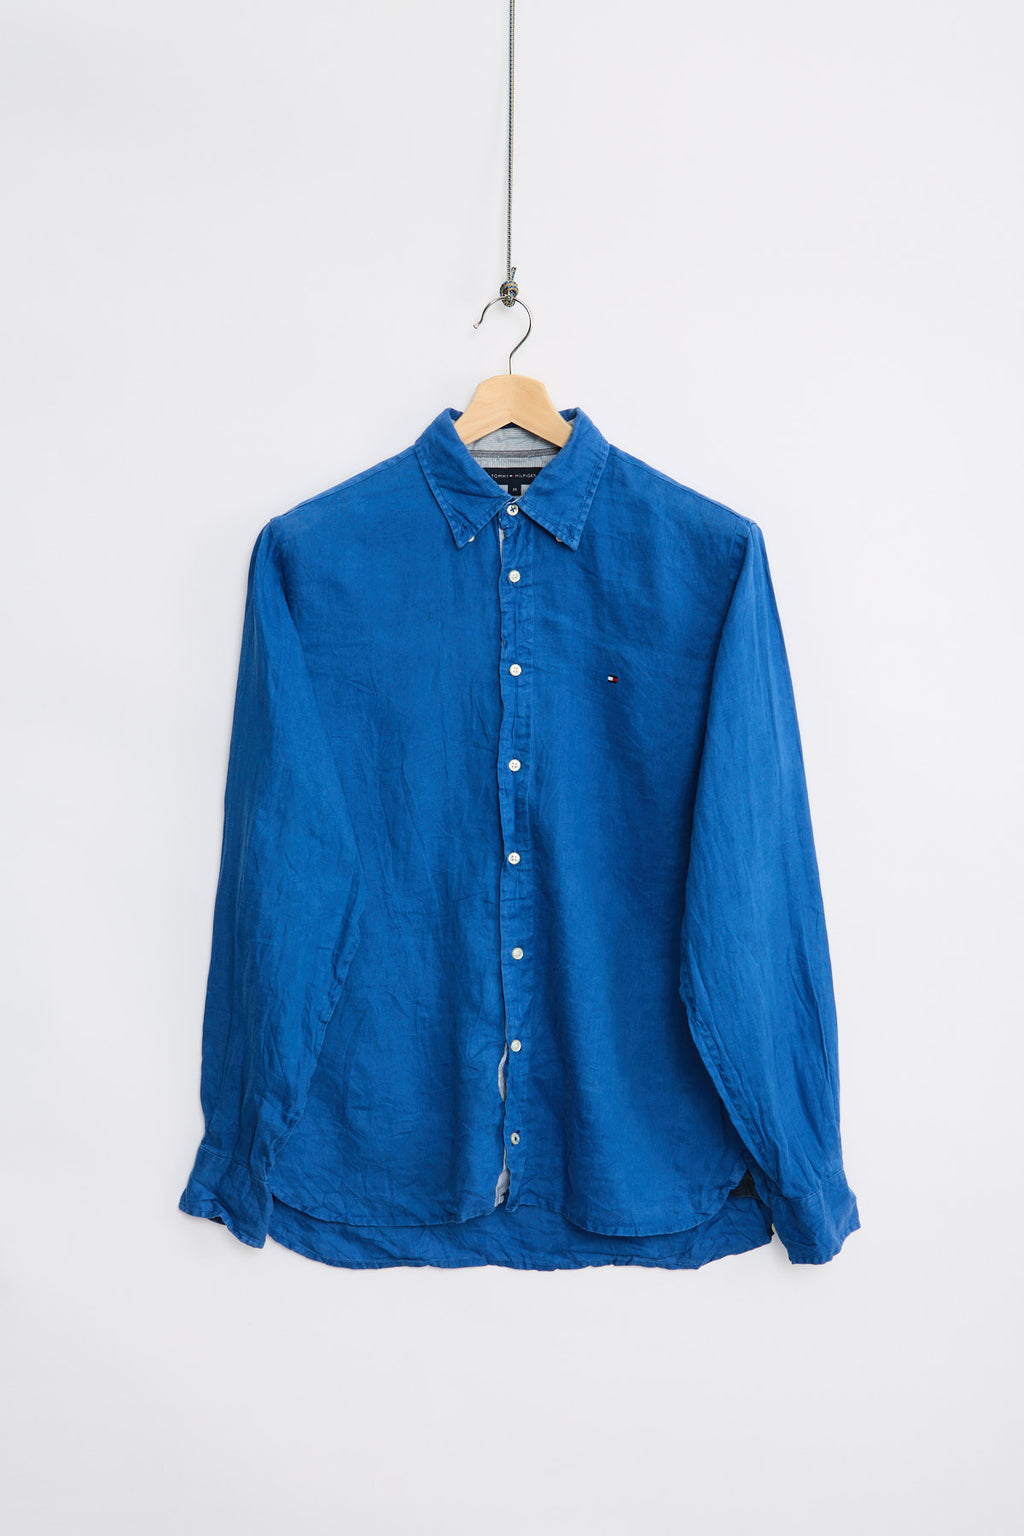 Tommy Hilfiger Linen Shirt (M) — Livid